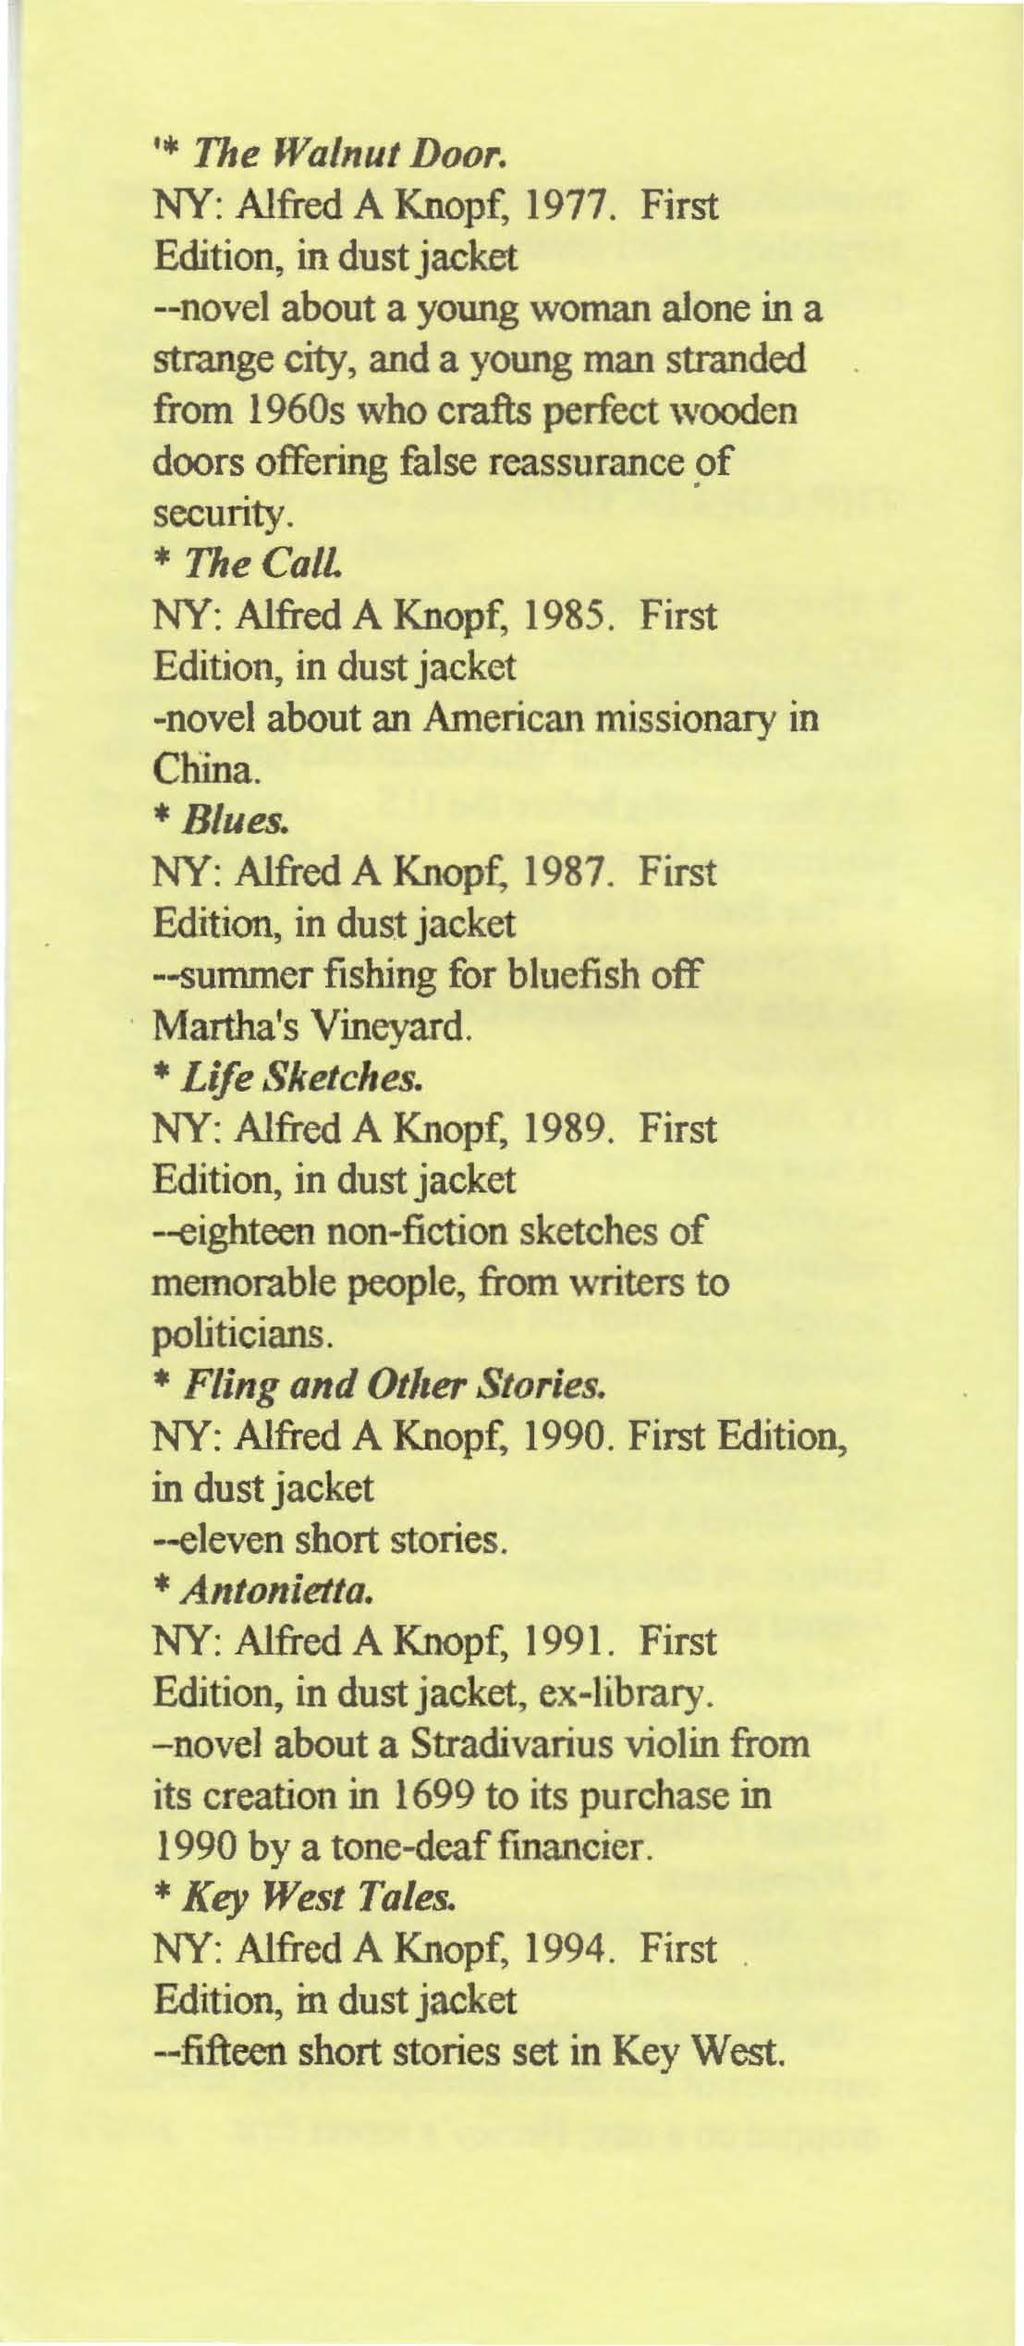 '. The Walnut Door. NY: Alfred A Knopf, 1977.